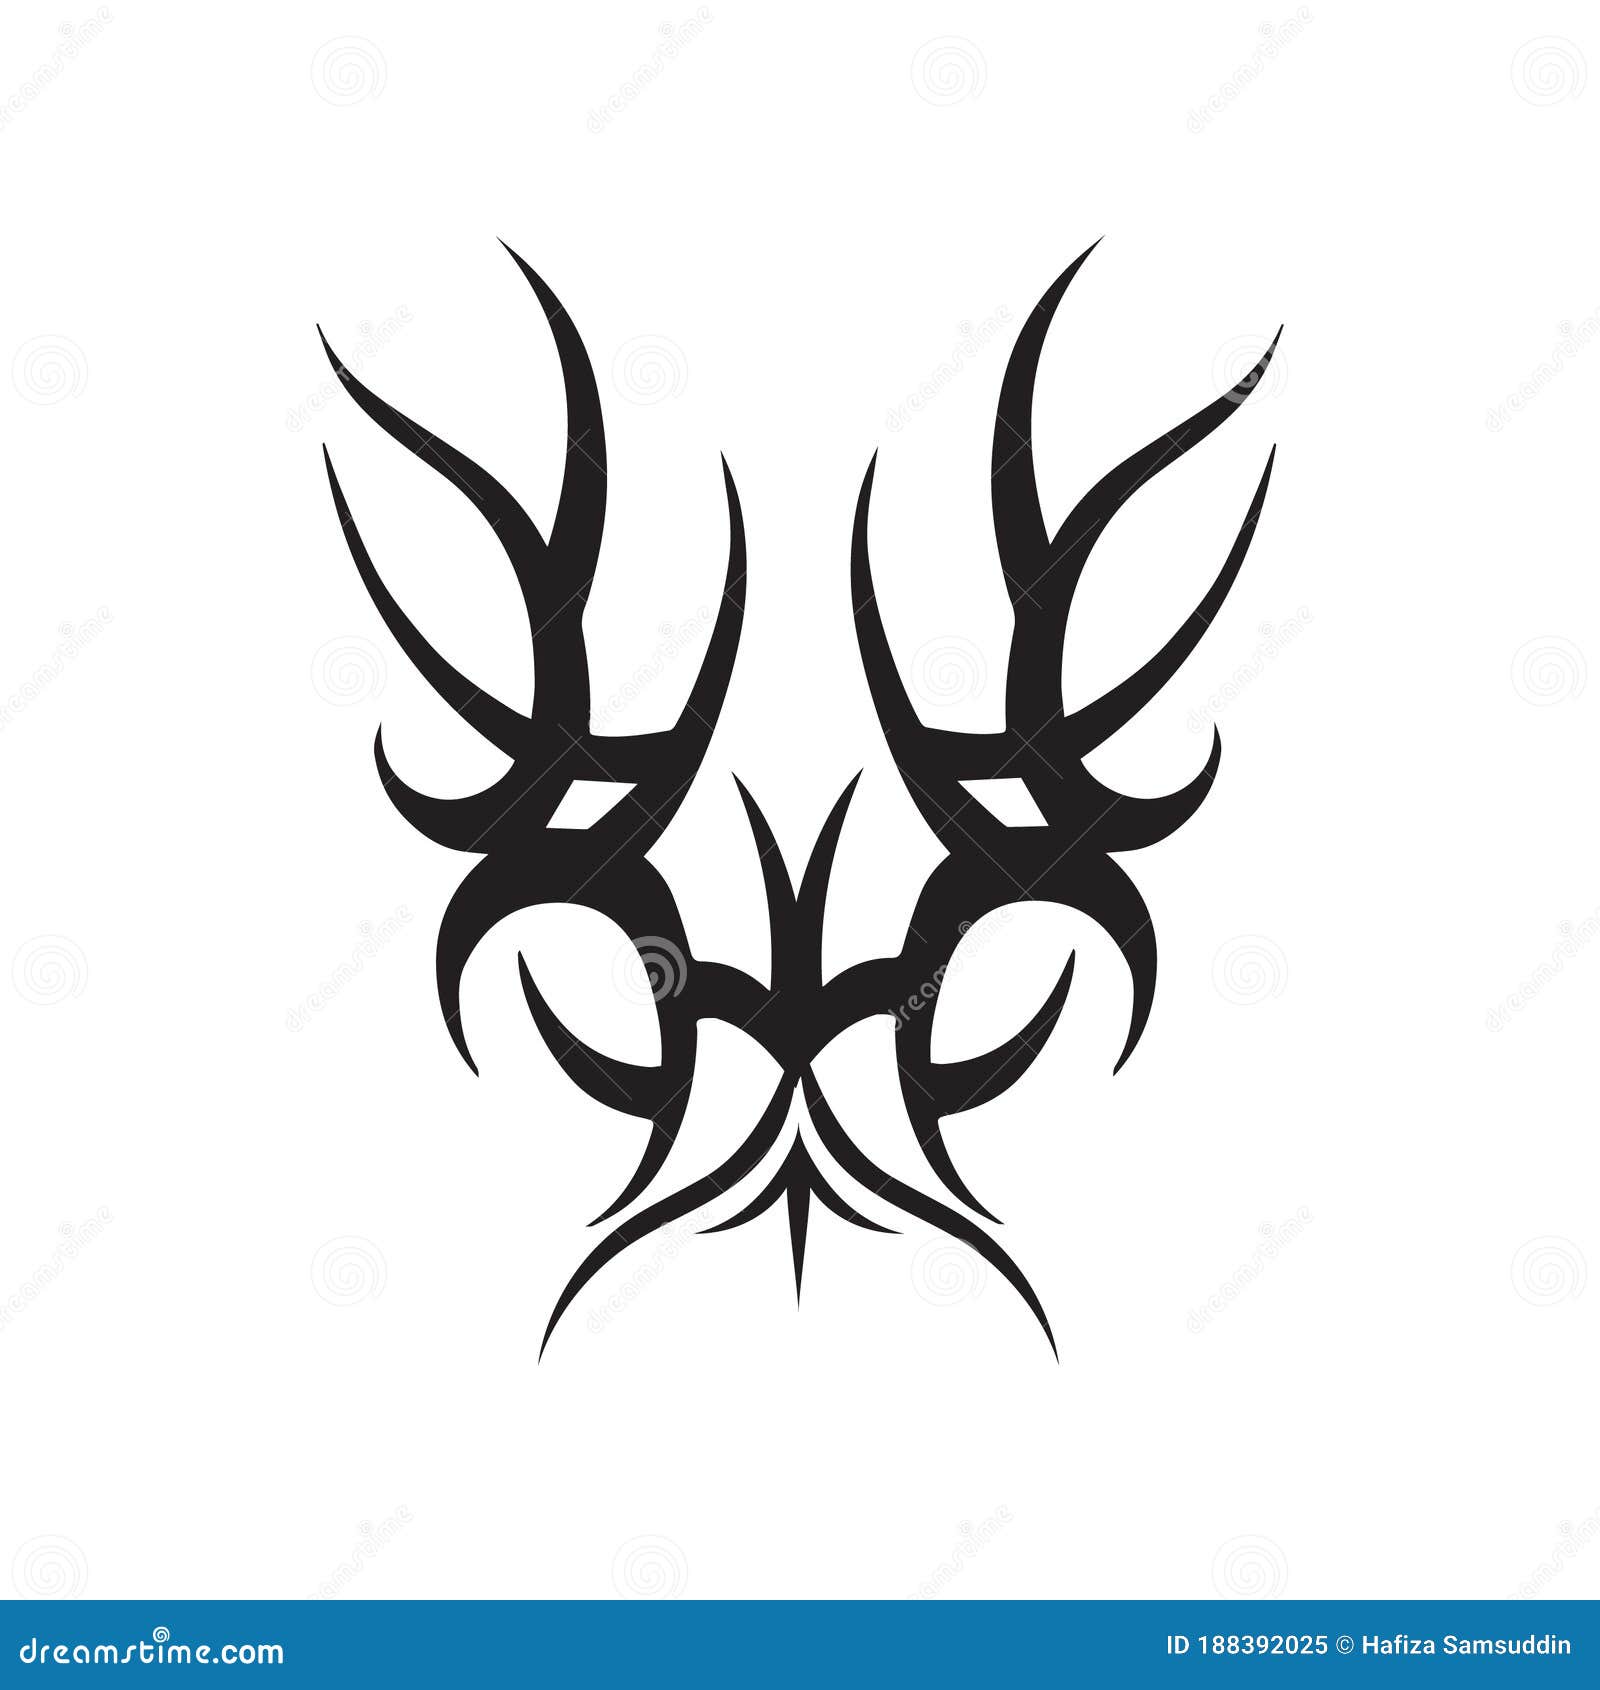 Tribal tattoo vector template logo v14 - TemplateMonster